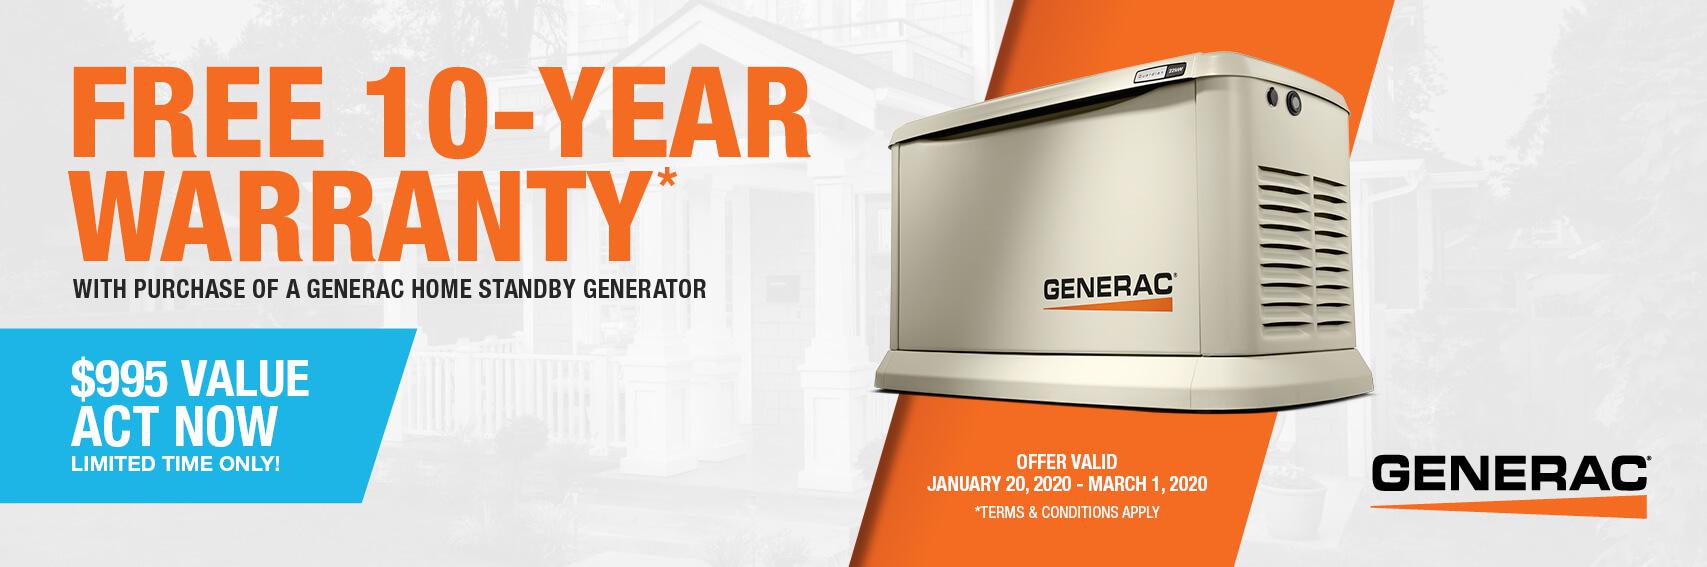 Homestandby Generator Deal | Warranty Offer | Generac Dealer | Lakewood, NJ